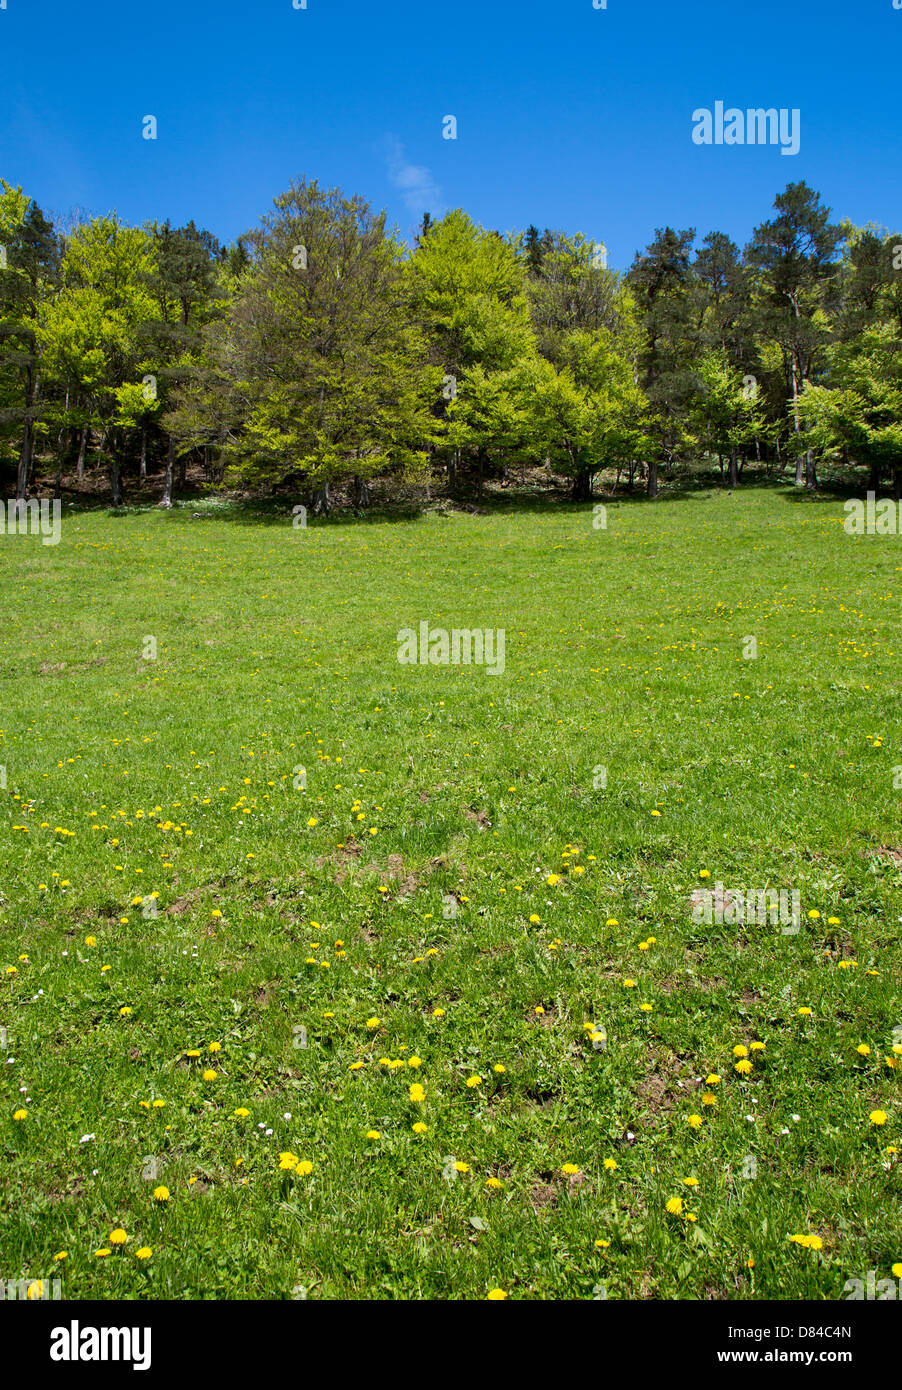 A swiss meadow landscape taken in Baselland, Switzerland Stock Photo